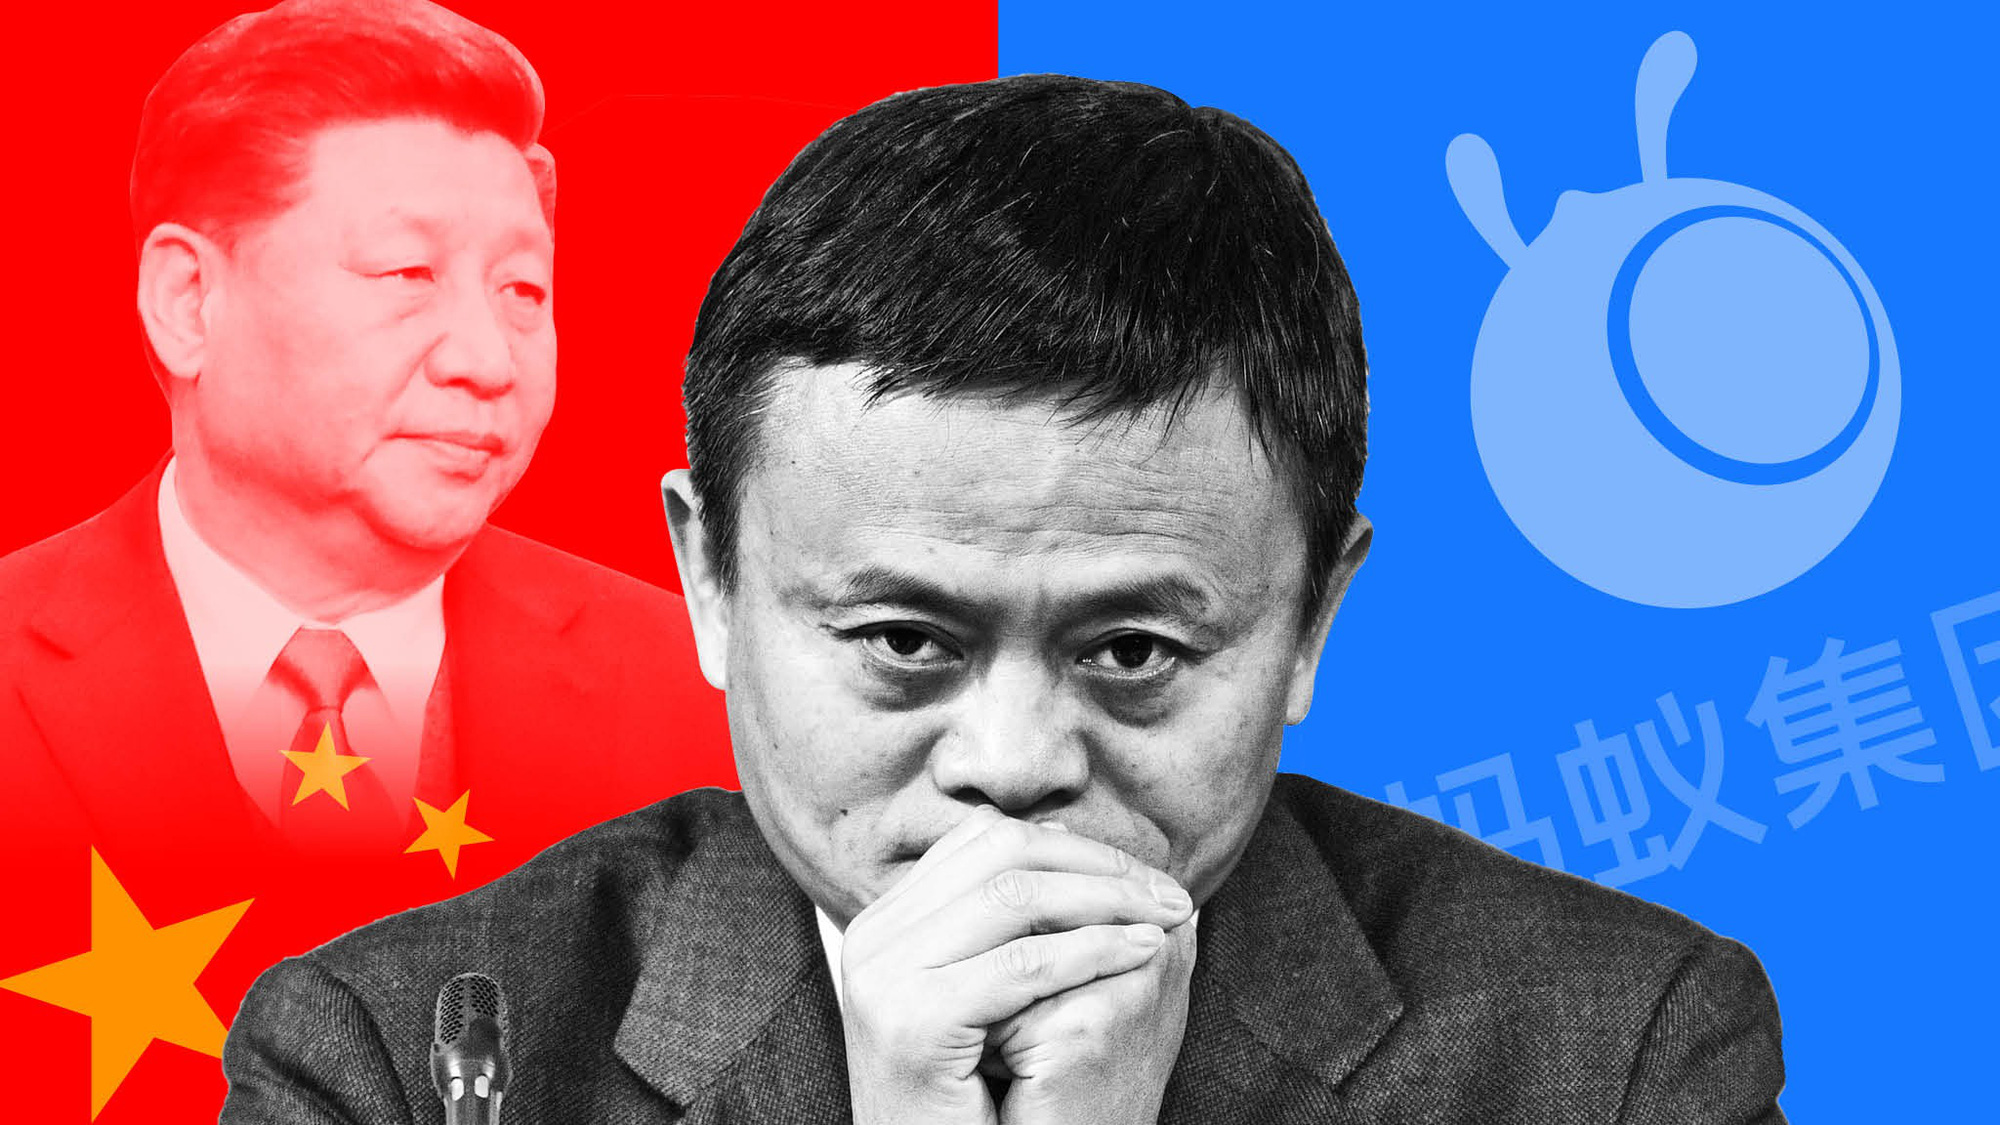 Phát ngôn khiến tỷ phú Jack Ma 'trả giá' bằng 35 tỷ USD. Ảnh: @AFP.